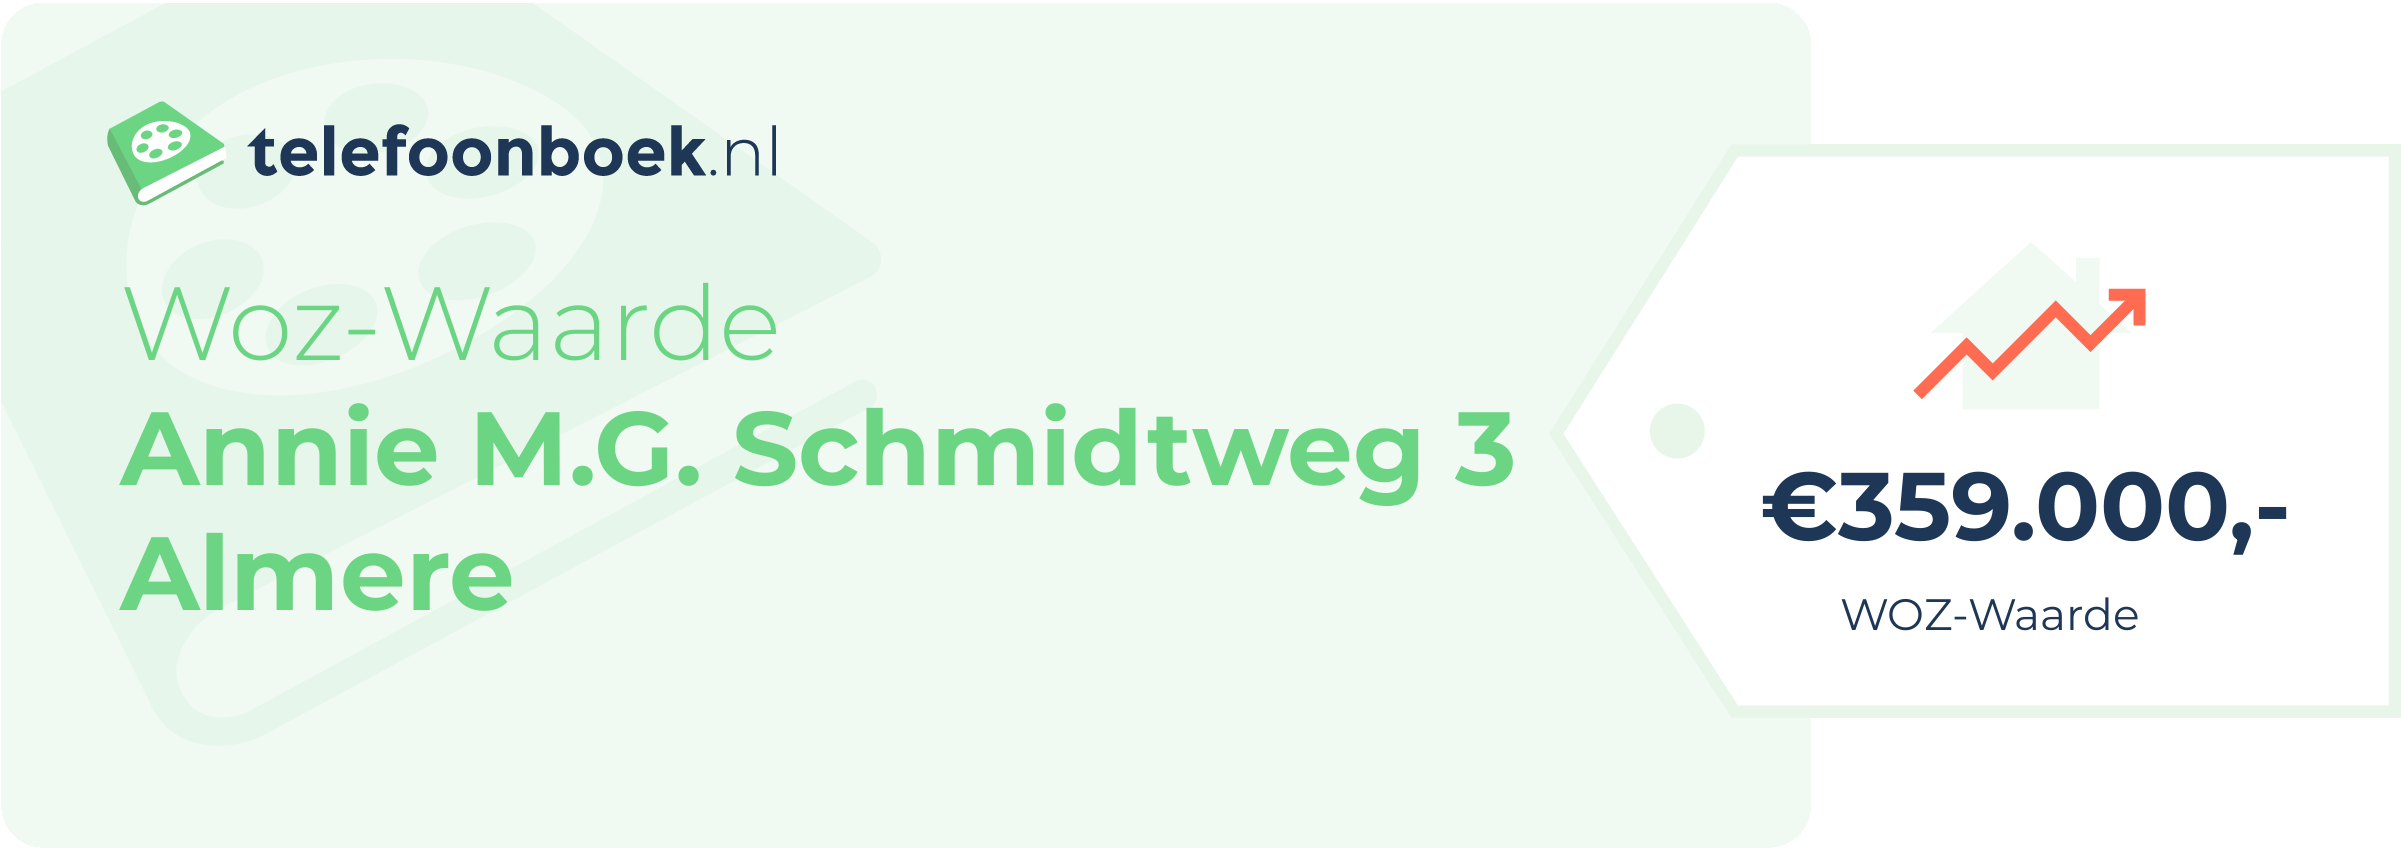 WOZ-waarde Annie M.G. Schmidtweg 3 Almere